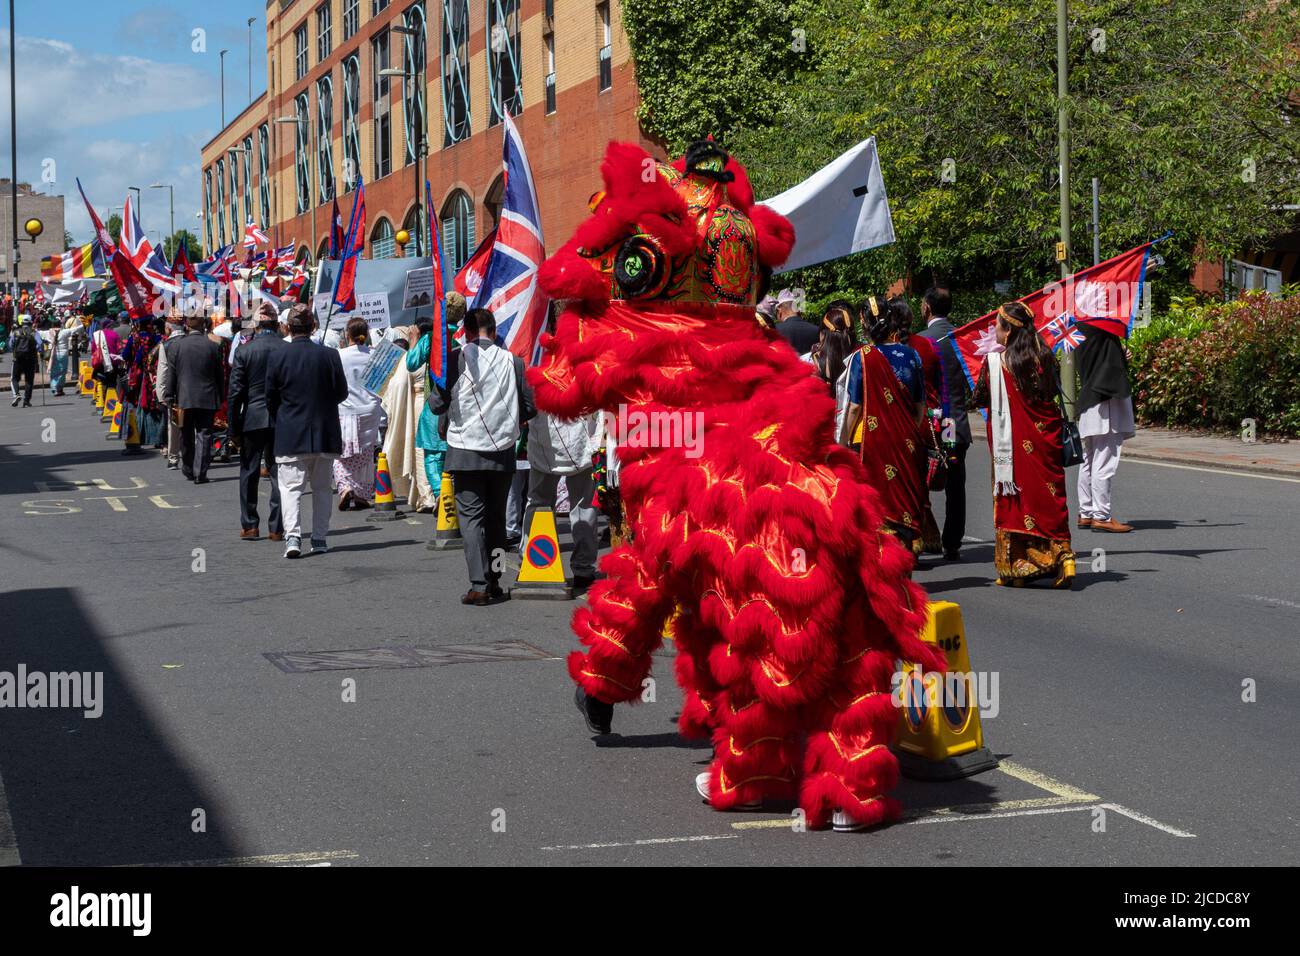 Le Grand Parade à la fête de Victoria, un événement annuel à Aldershot, Hampshire, Angleterre, Royaume-Uni, auquel participe un danseur de lion chinois Banque D'Images